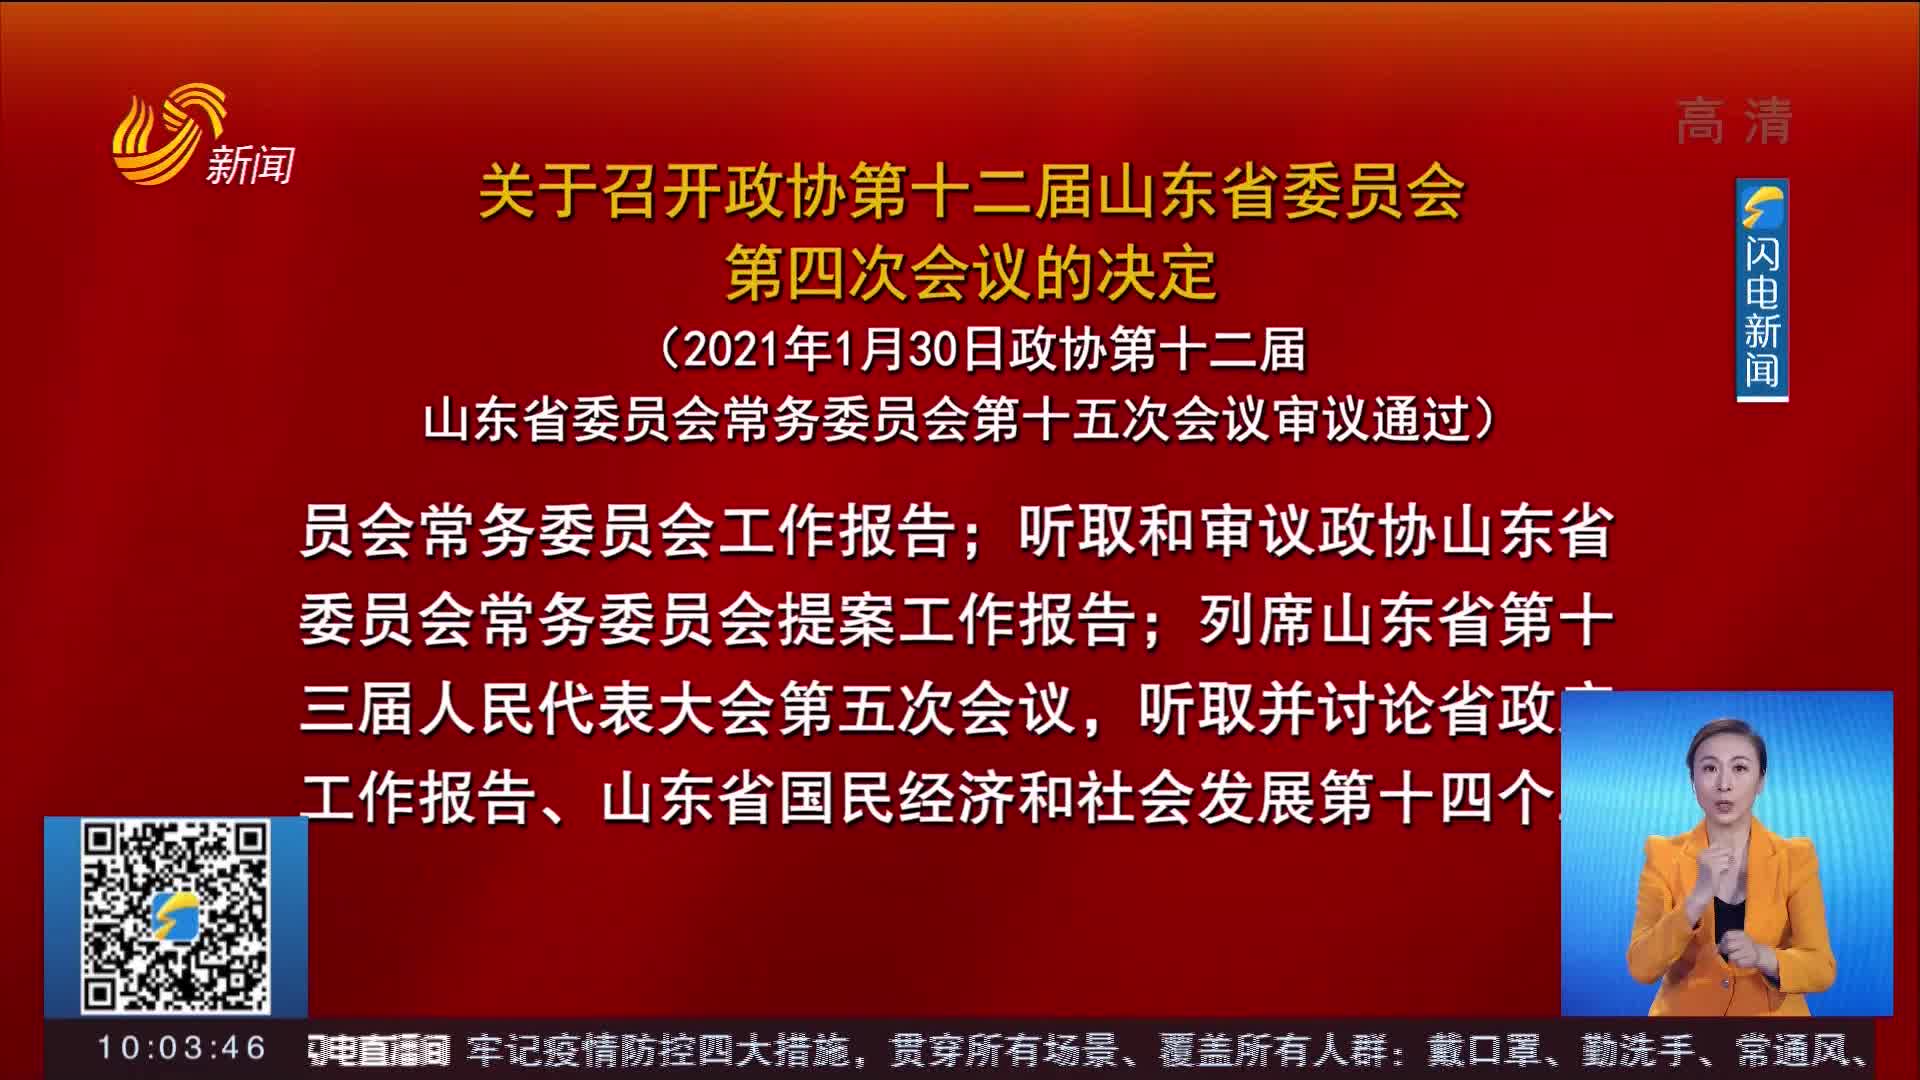 政协第十二届山东省委员会第四次会议于2月1日在济南召开